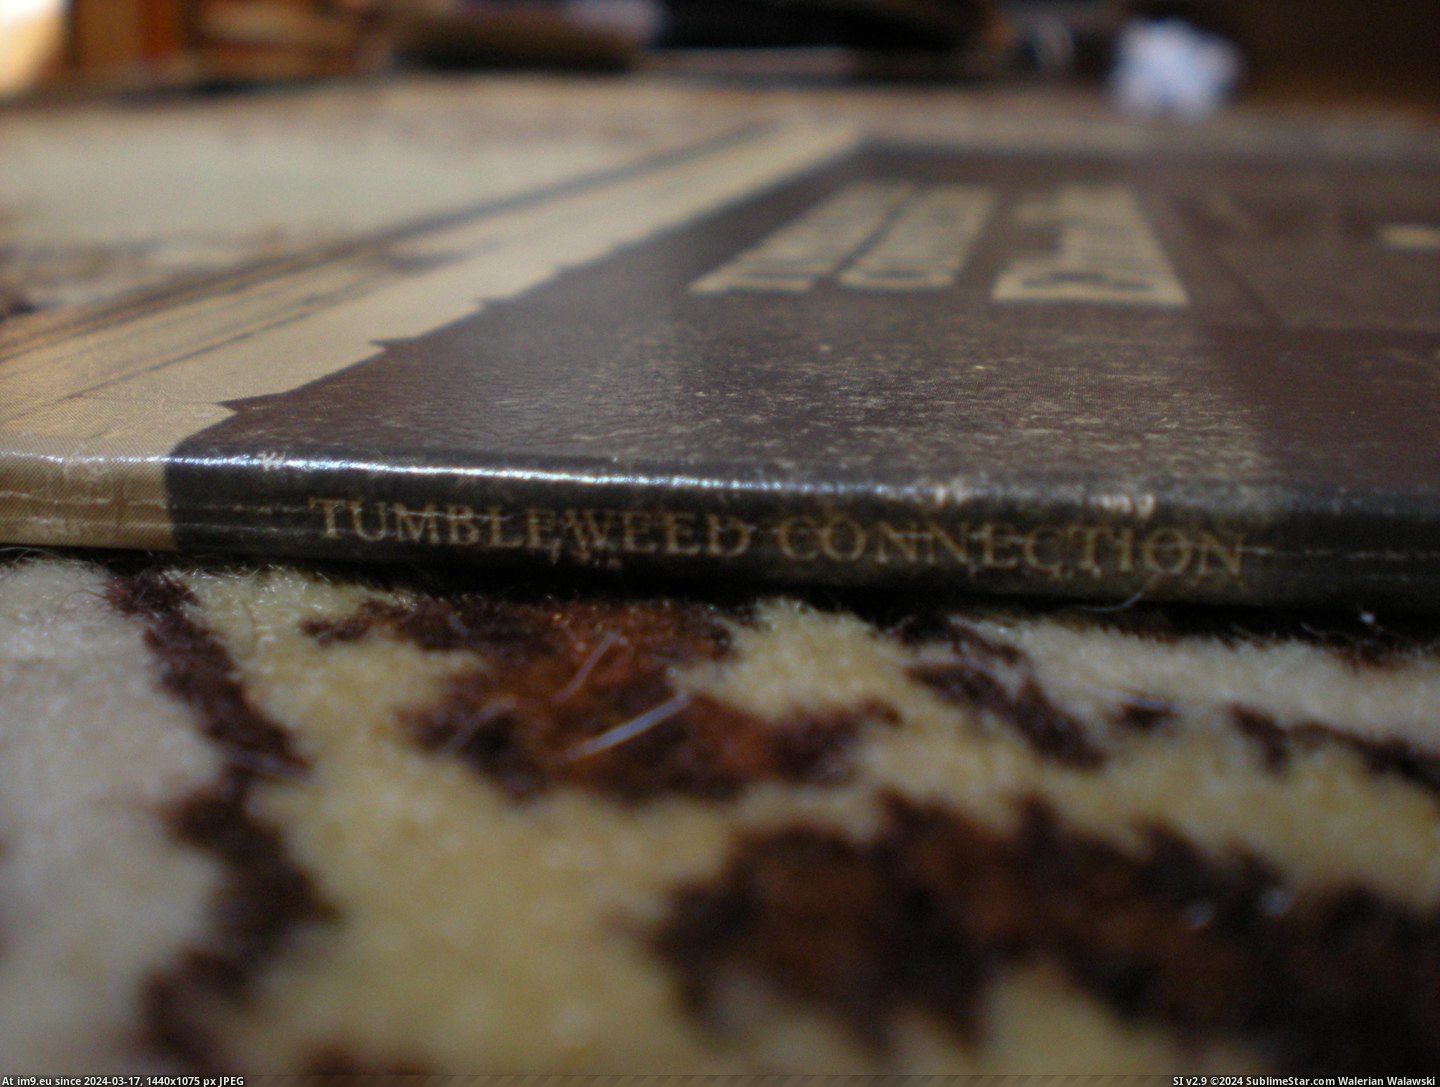  #Tumbleweed  Tumbleweed 9 Pic. (Obraz z album new 1))